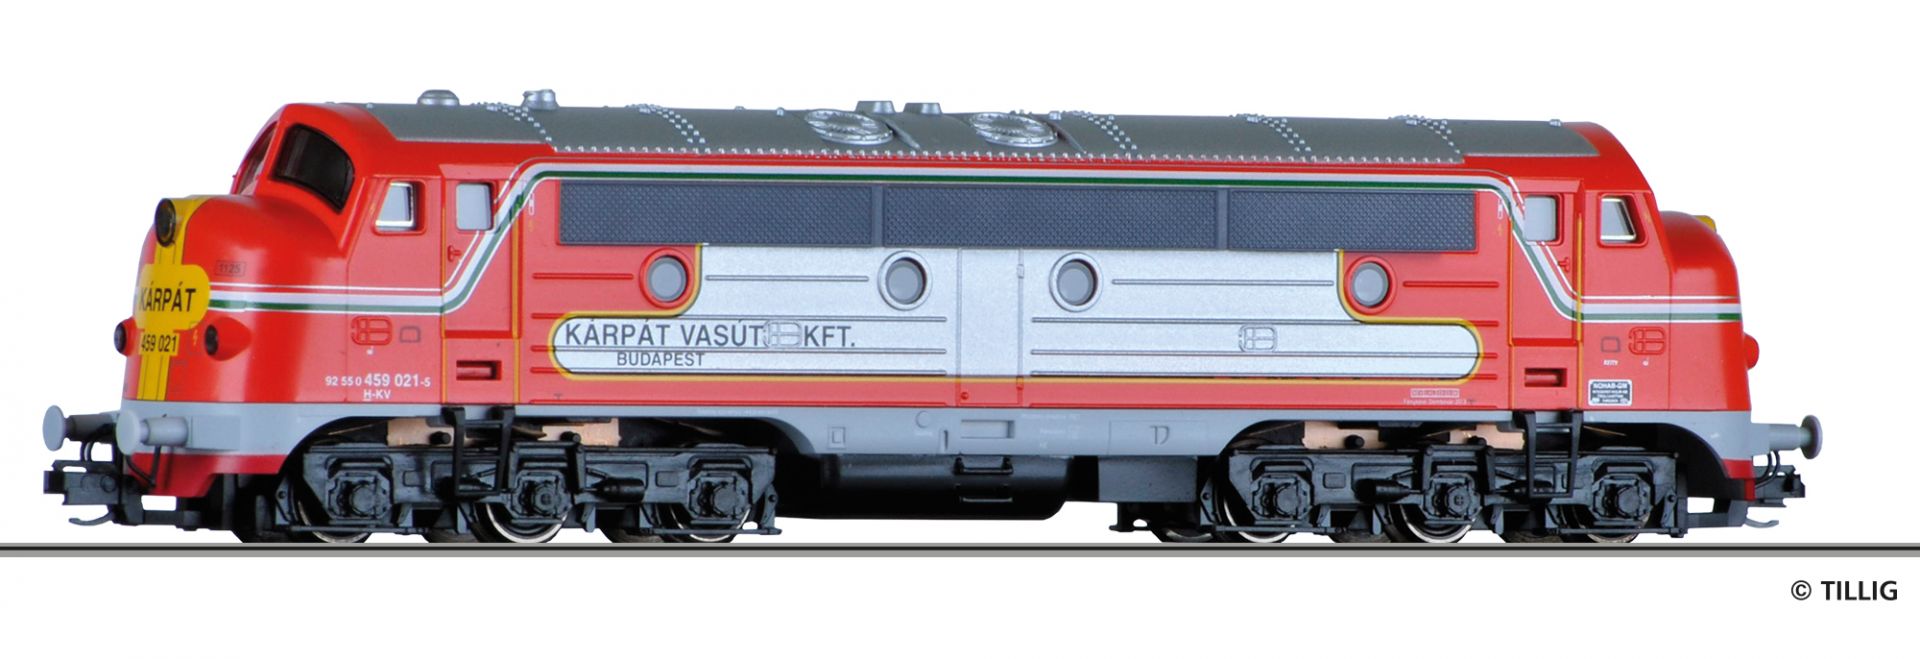 04542 | Diesellokomotive KARPAT VASUT -werksseitig ausverkauft-